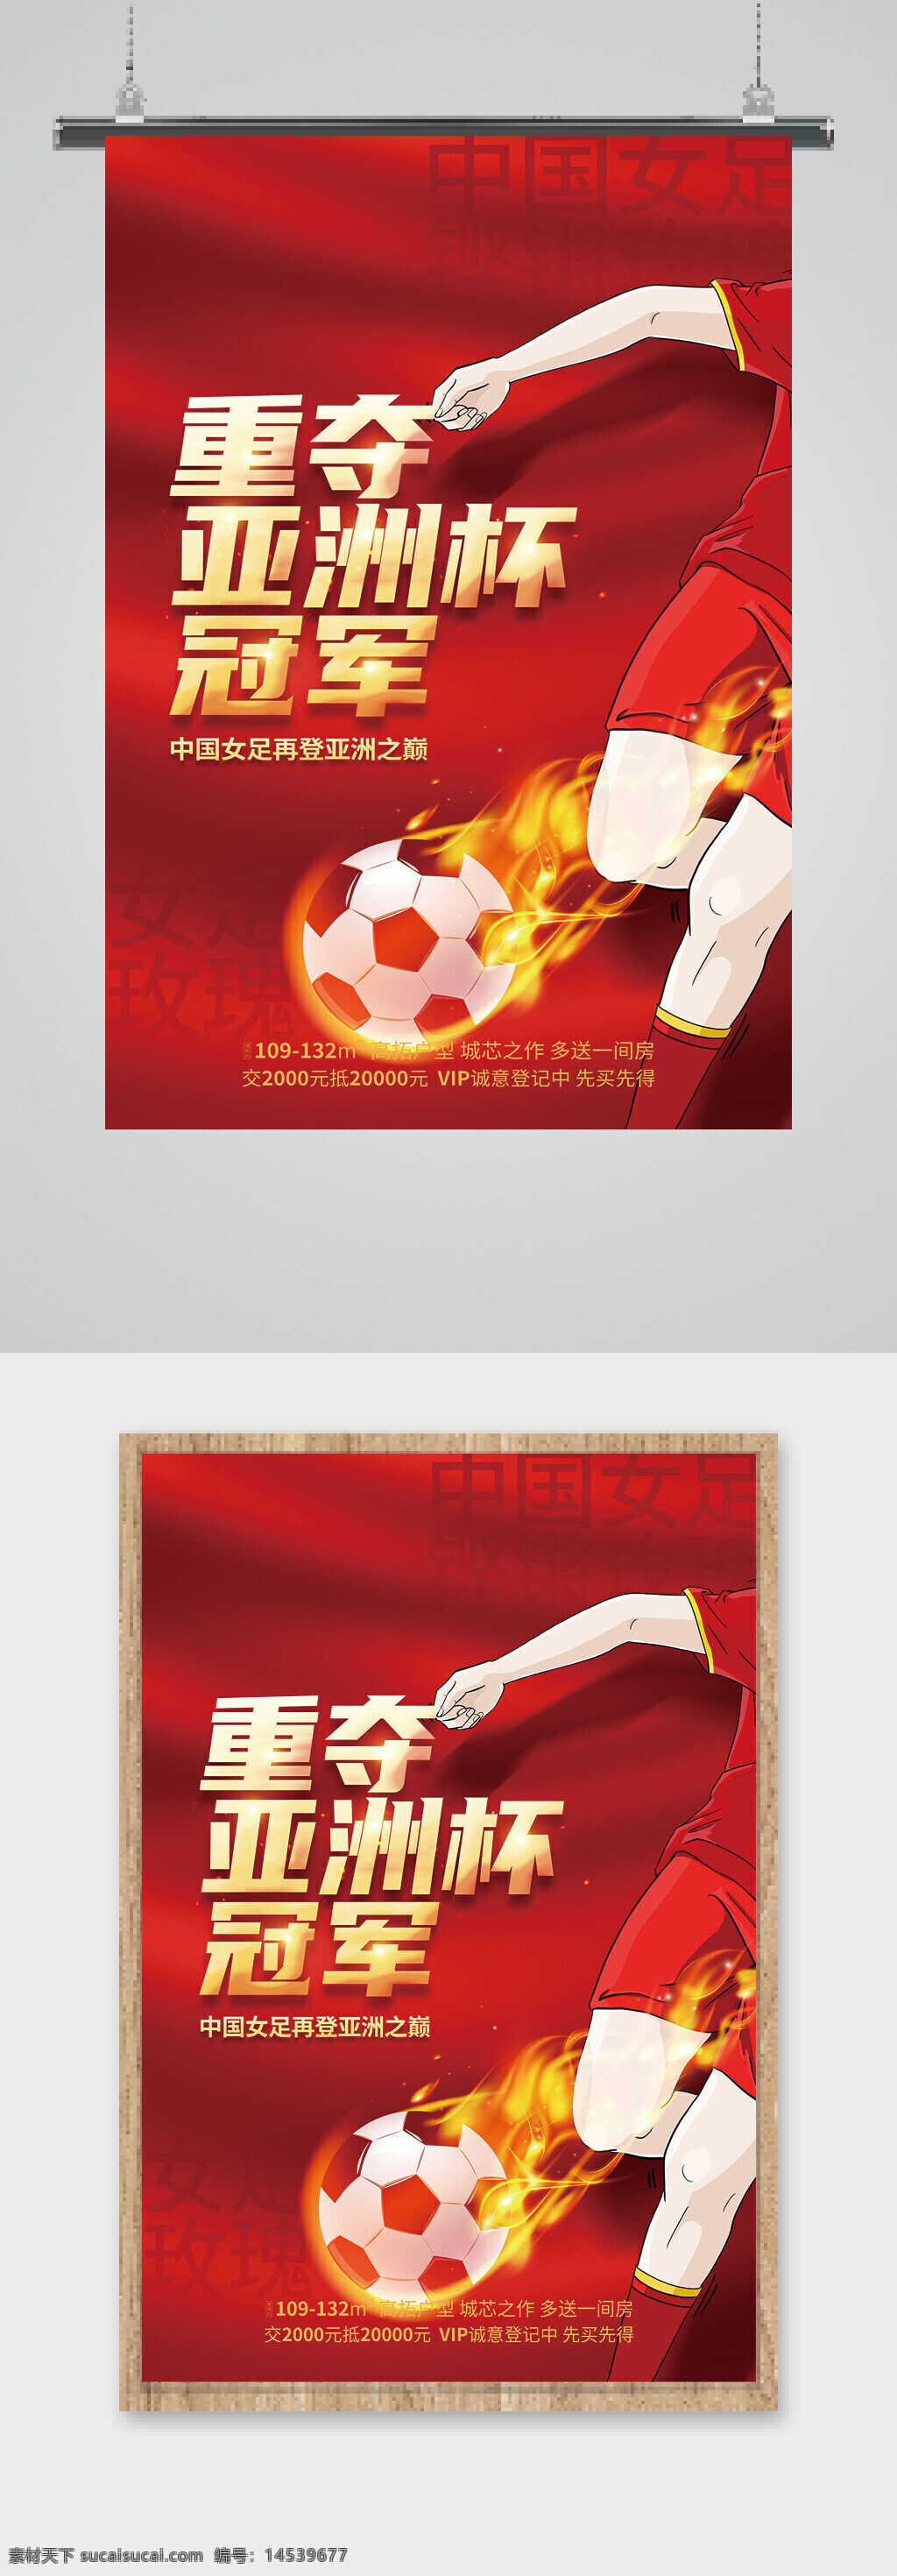 女足世界杯 法国世界杯 世界杯分组 世界杯 世界杯海报 女足 中国女足 女子足球 女足加油 女足海报 女足展板 女足比赛